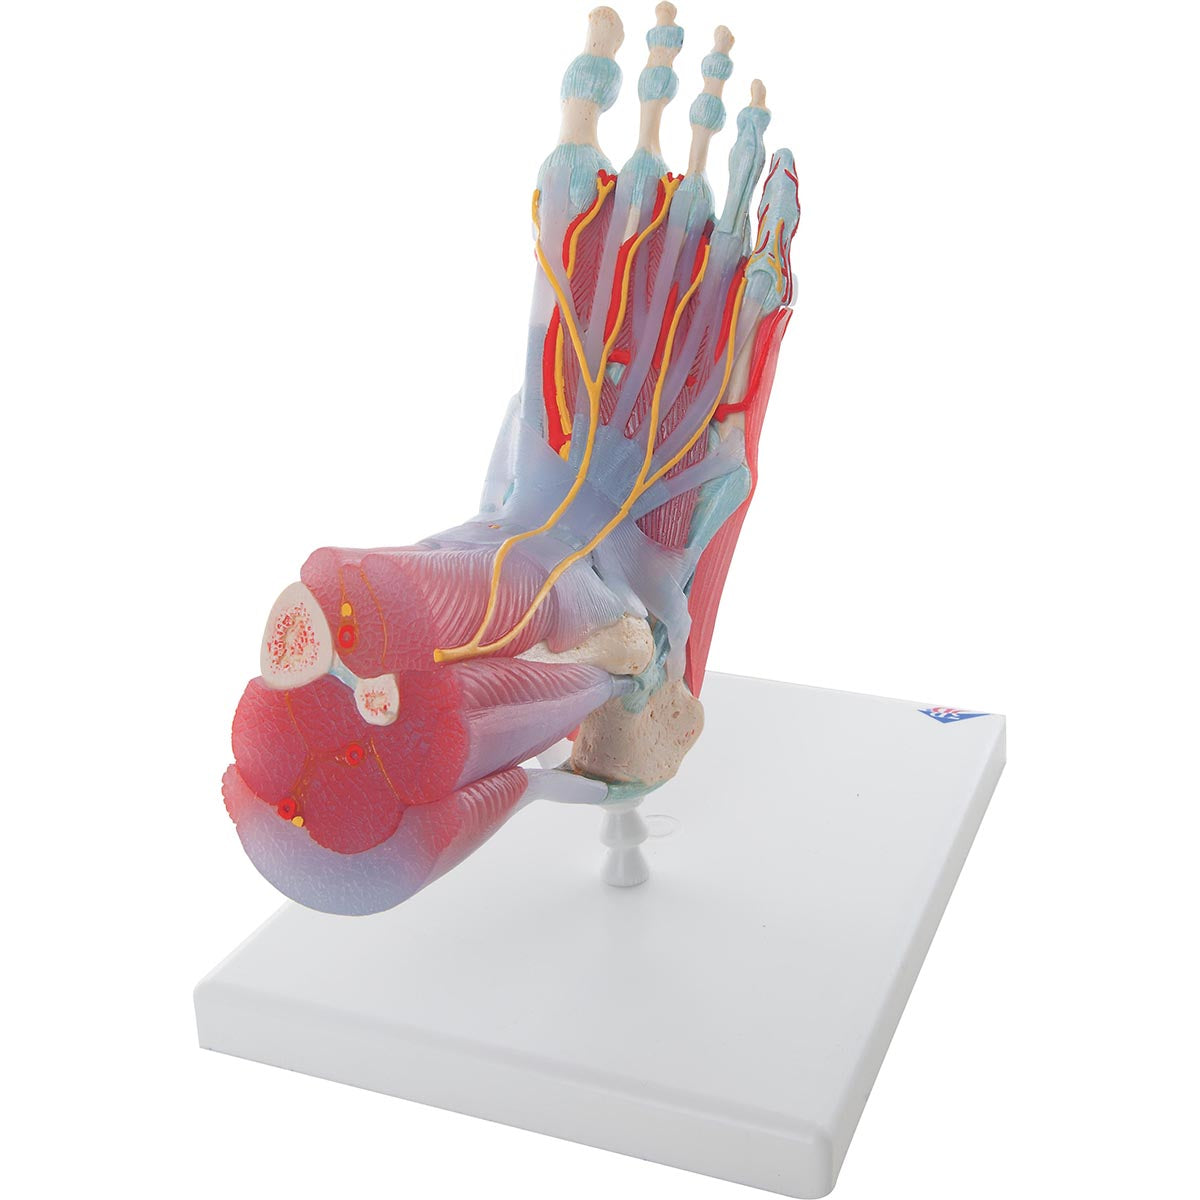 Komplett fotmodell med ligament, muskler, kärl och nerver - kan separeras i 6 delar